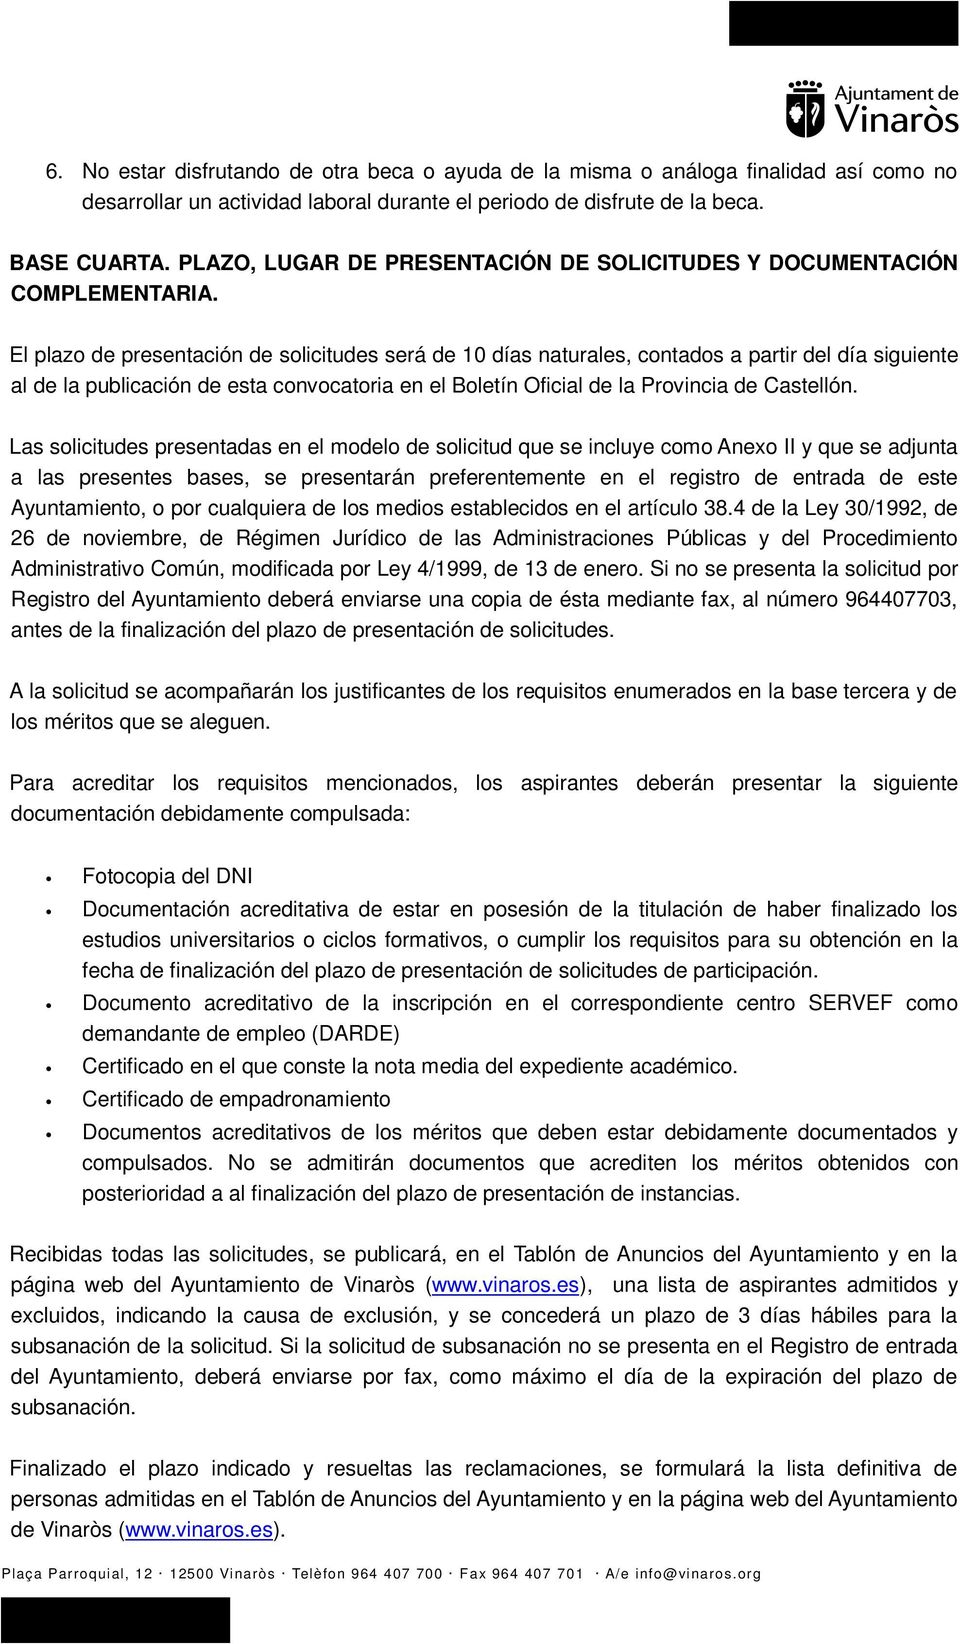 El plazo de presentación de solicitudes será de 10 días naturales, contados a partir del día siguiente al de la publicación de esta convocatoria en el Boletín Oficial de la Provincia de Castellón.